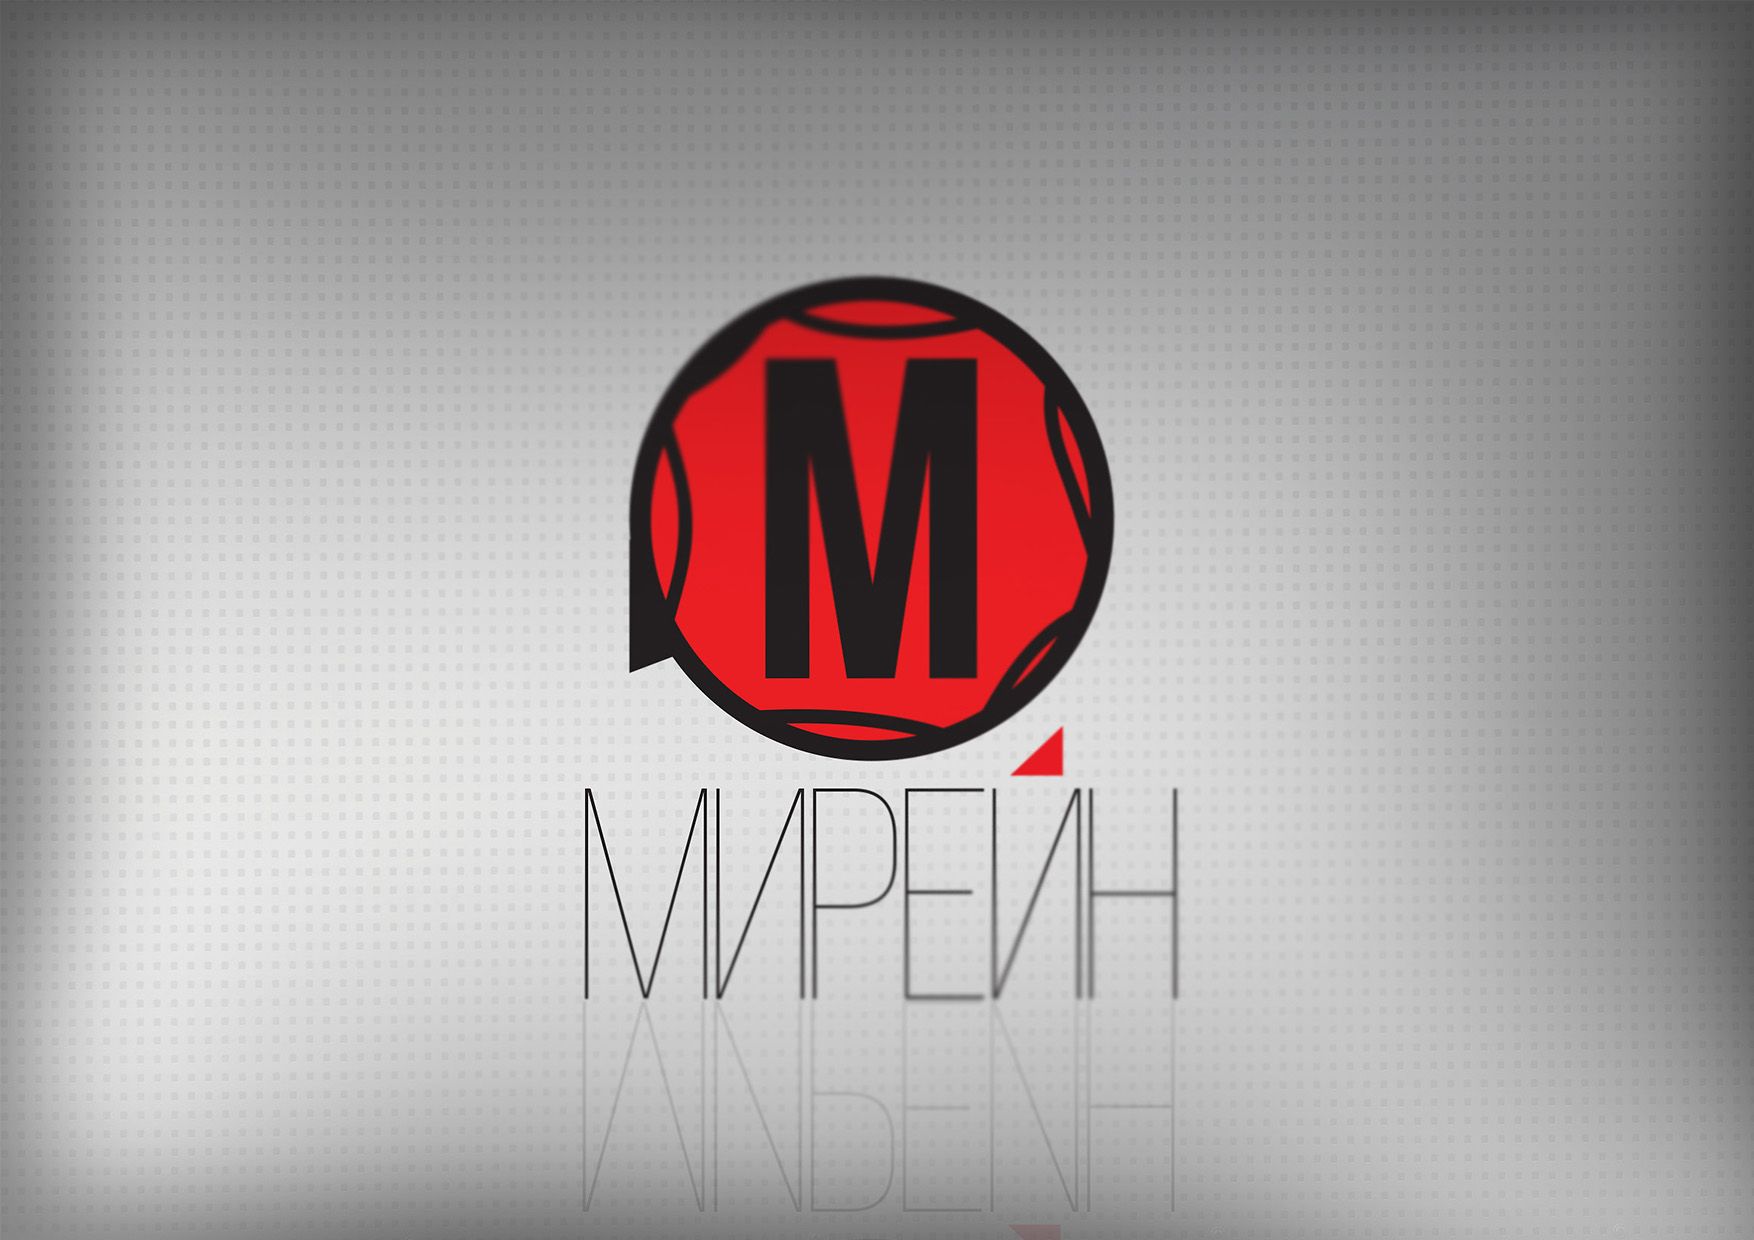 Логотип для группы компаний Мирейн - дизайнер kays93